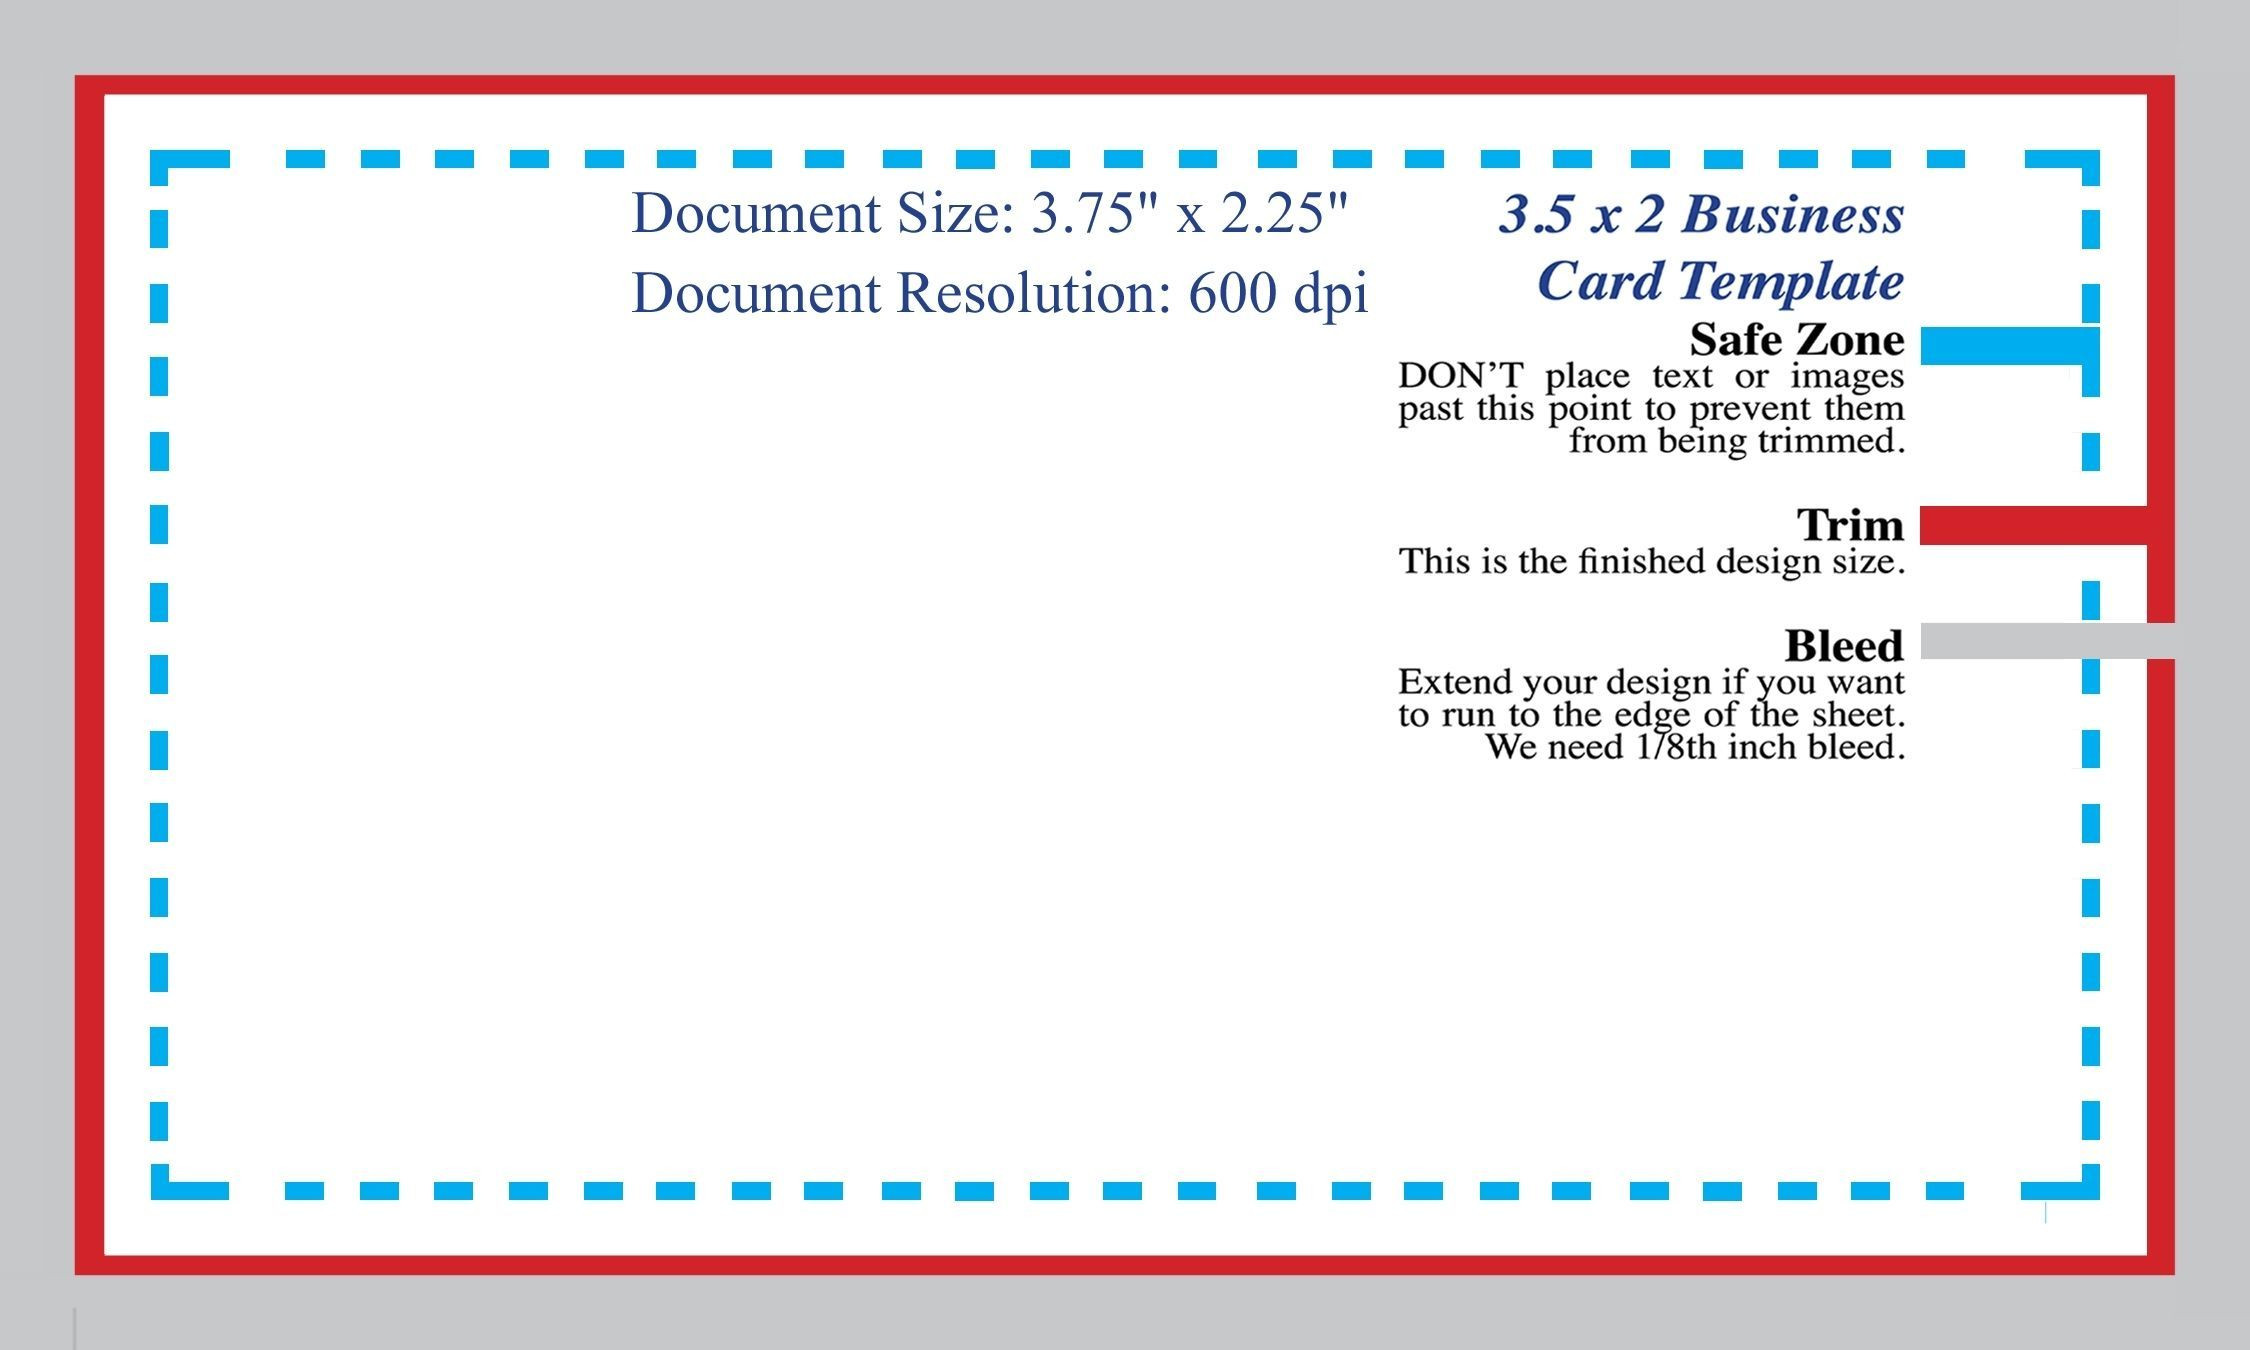 Standard Business Card Blank Template Shop Template Of Create Business Card Template Photoshop